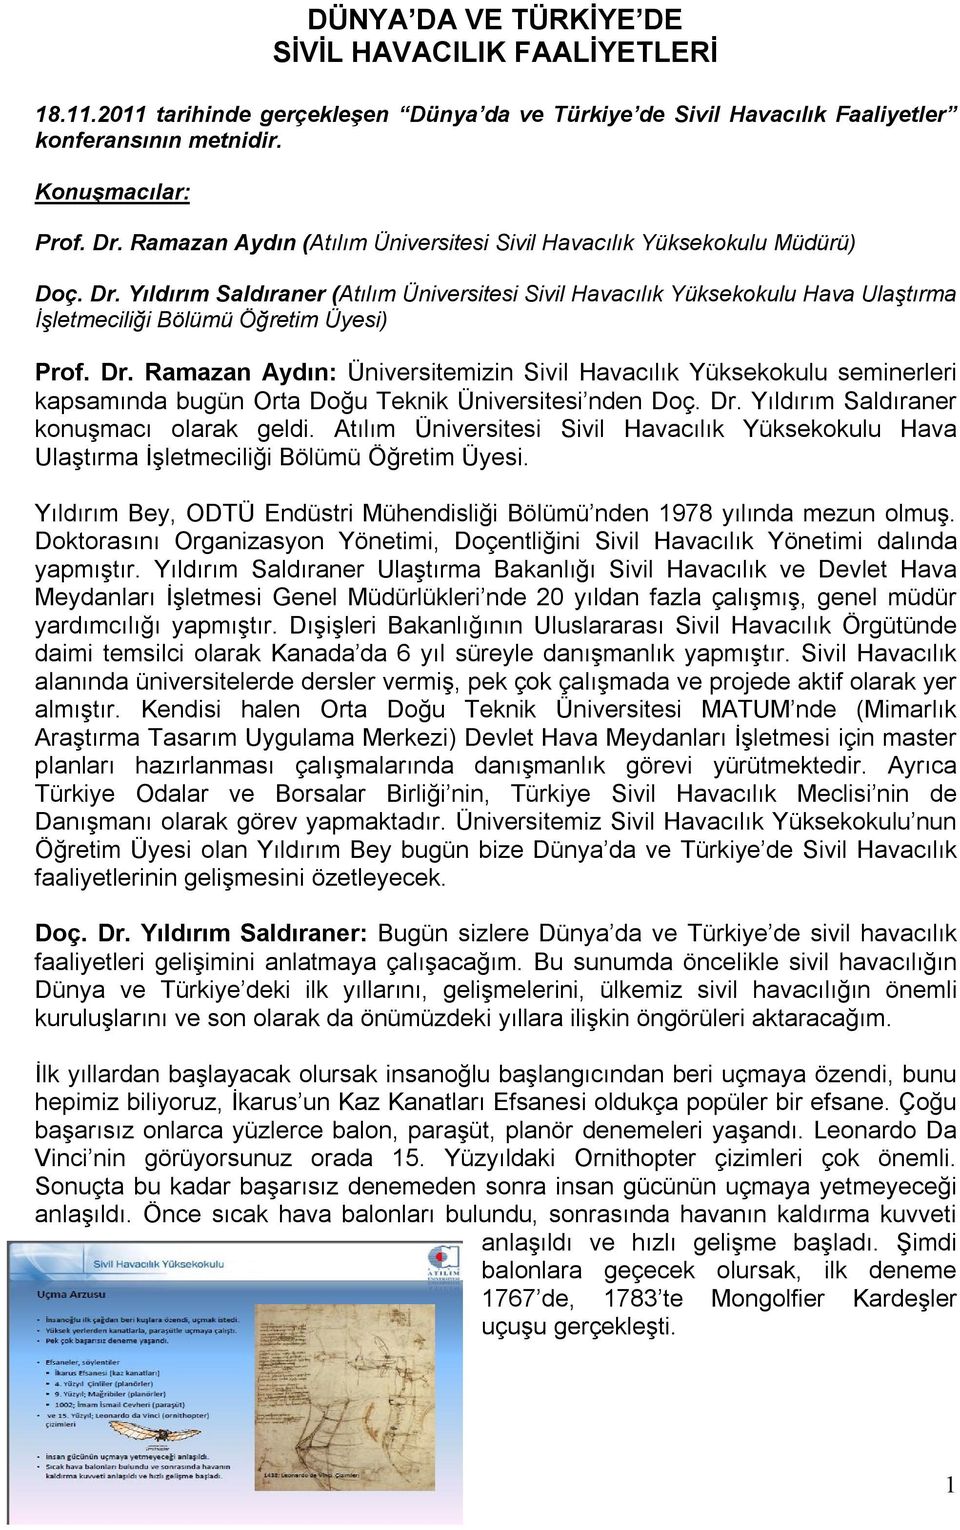 Yıldırım Saldıraner (Atılım Üniversitesi Sivil Havacılık Yüksekokulu Hava Ulaştırma İşletmeciliği Bölümü Öğretim Üyesi) Prof. Dr.